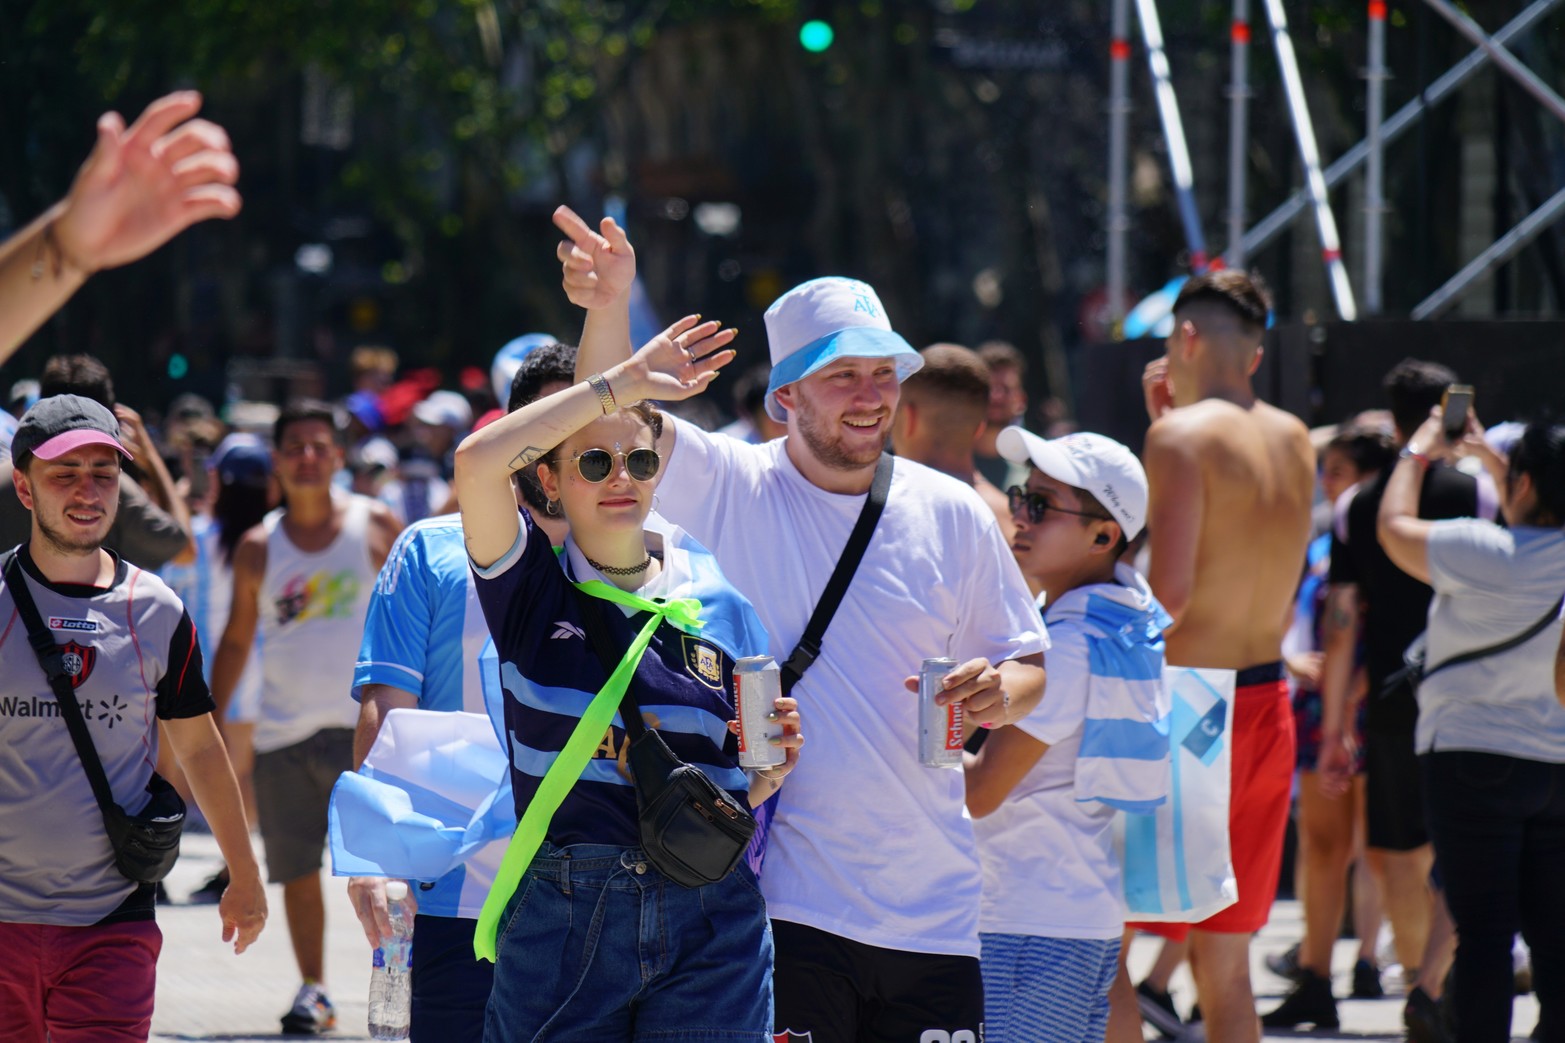 Los festejos en Plaza de Mayo esperando la selección Argentina campeona del mundo en fútbol.